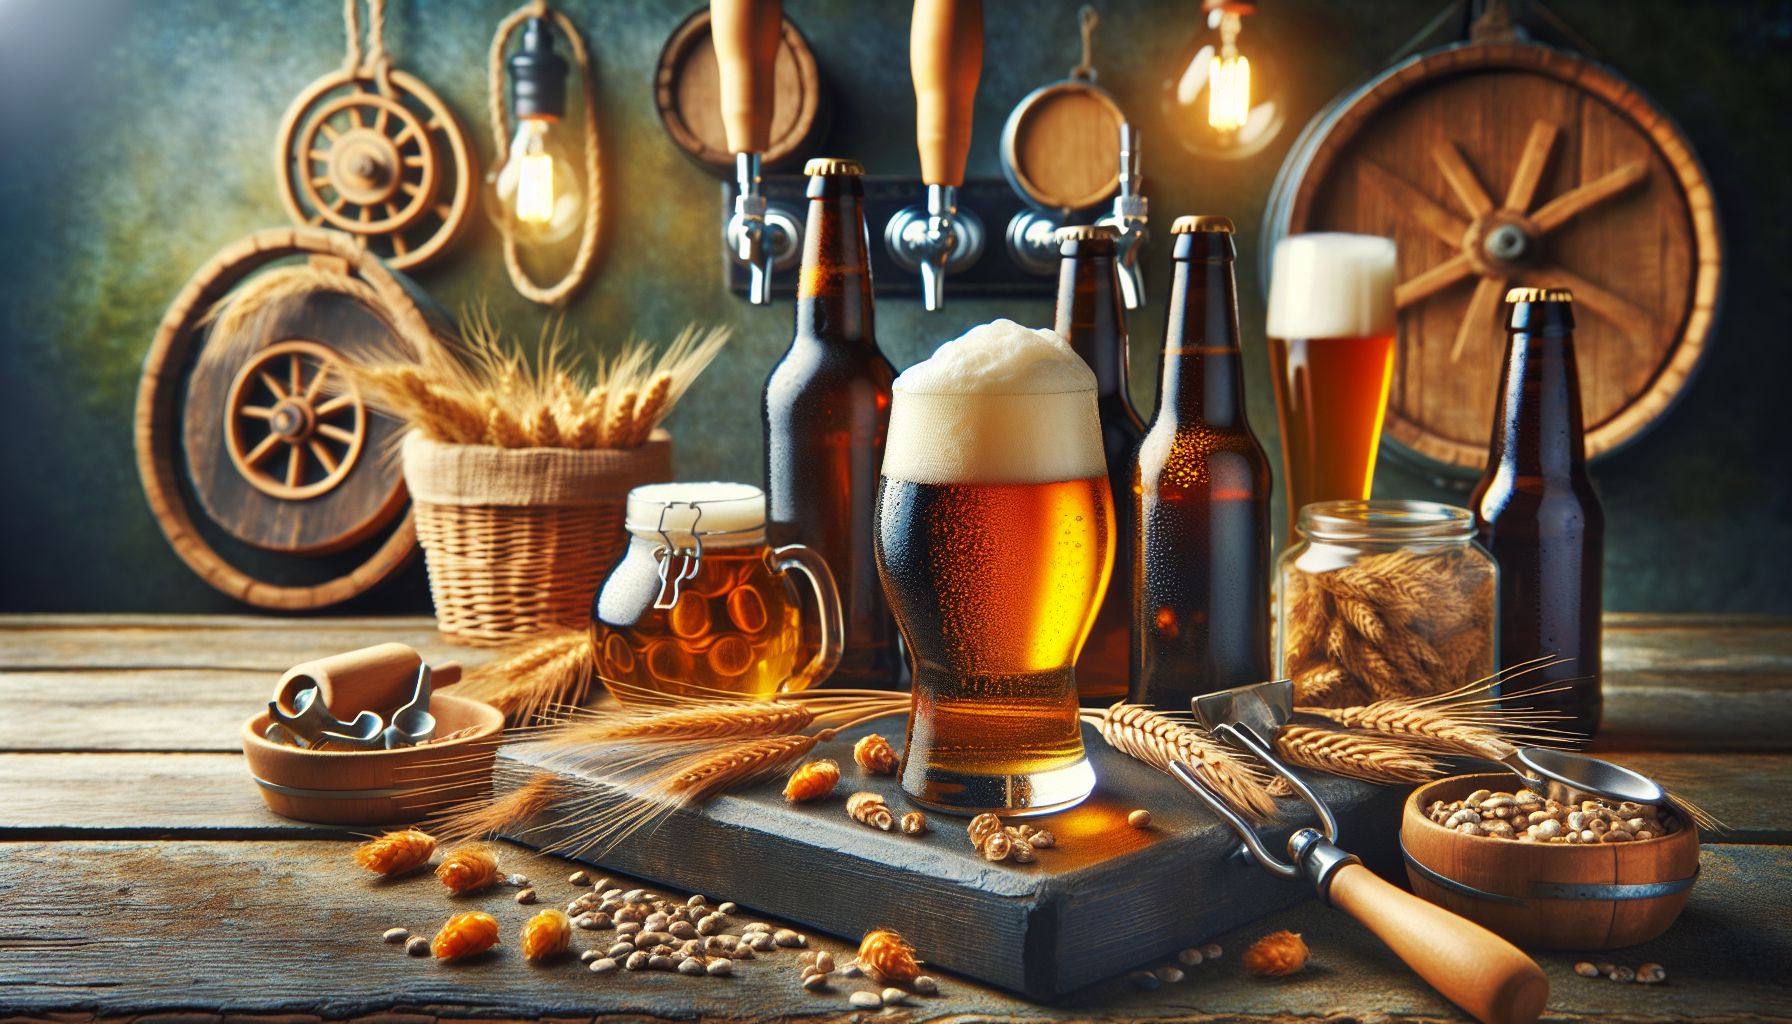 #Õllemaailma põnevatel radadel: erinevate õllede ja õllestiilide tutvustus